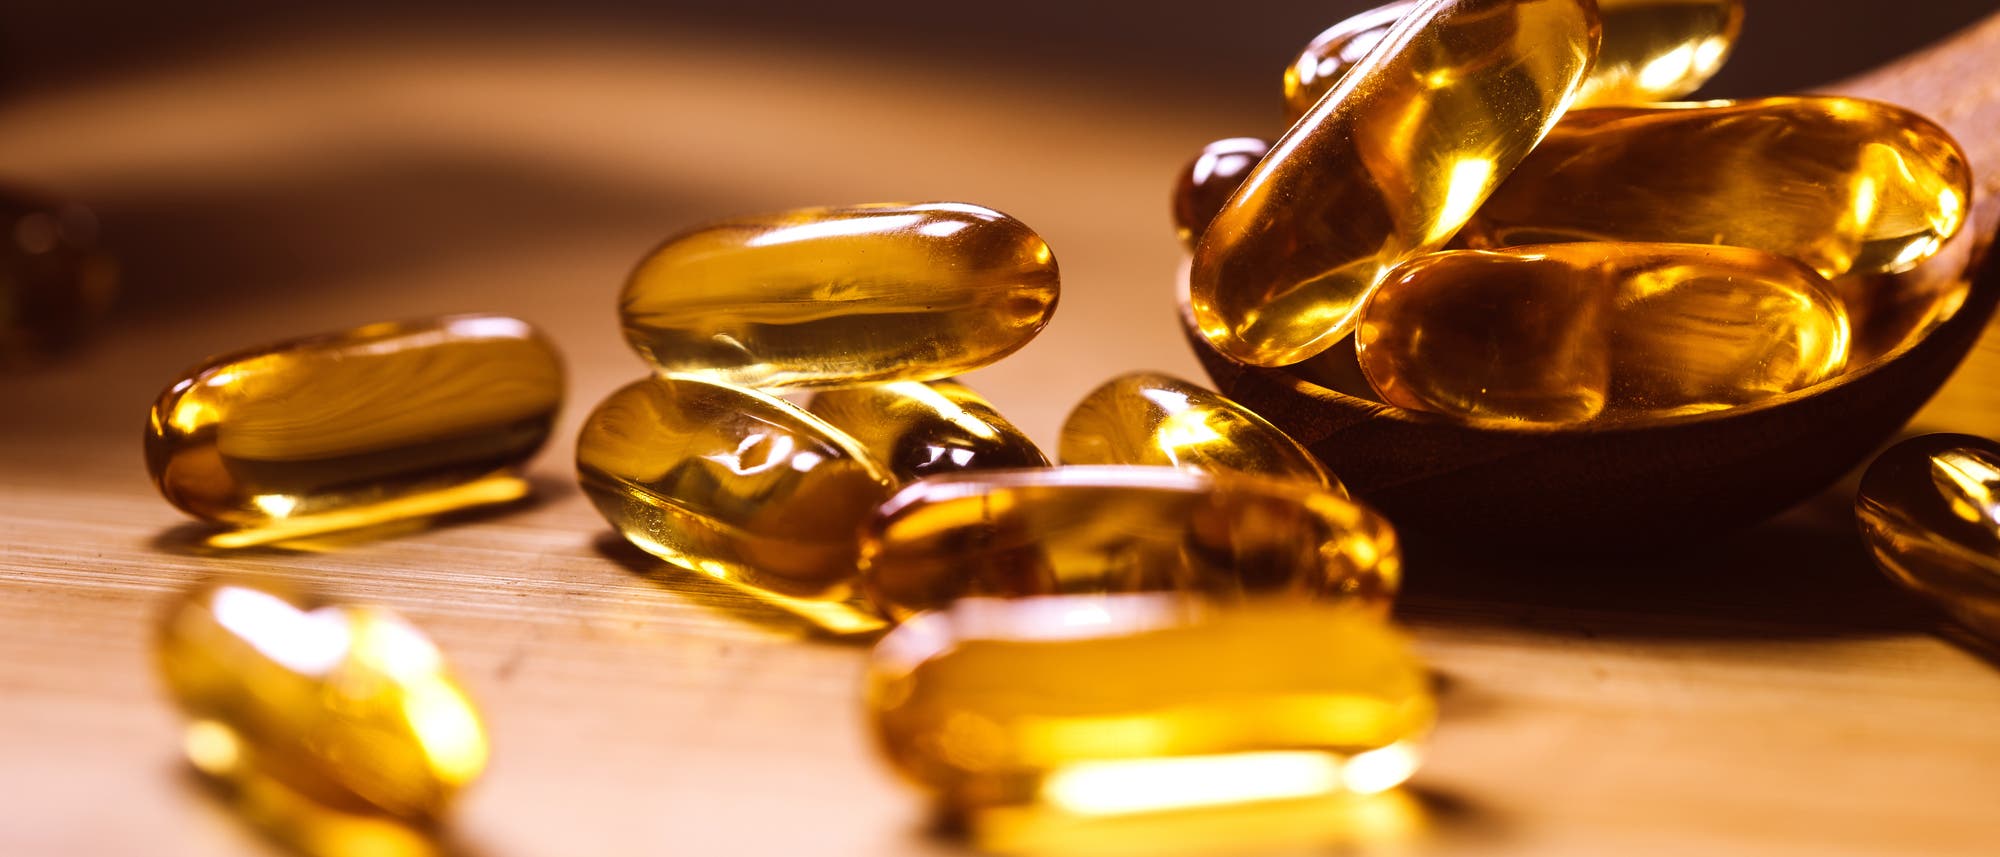 Auf einem Tisch liegen verstreut einige honigfarbene Vitamin-D-Kapseln